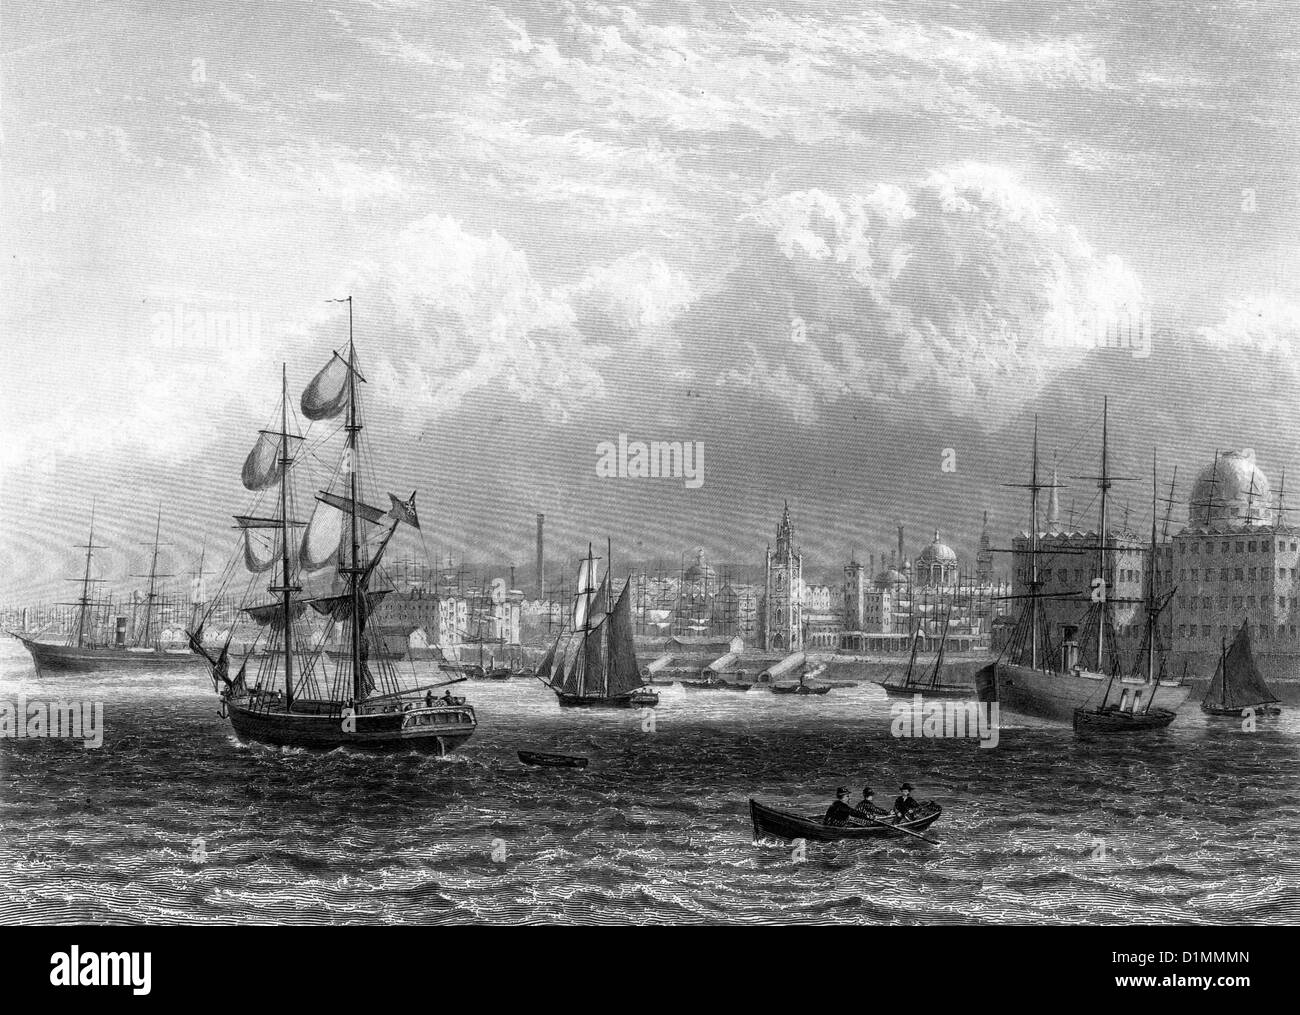 Le port de Liverpool, 19e siècle Illustration noir et blanc Banque D'Images